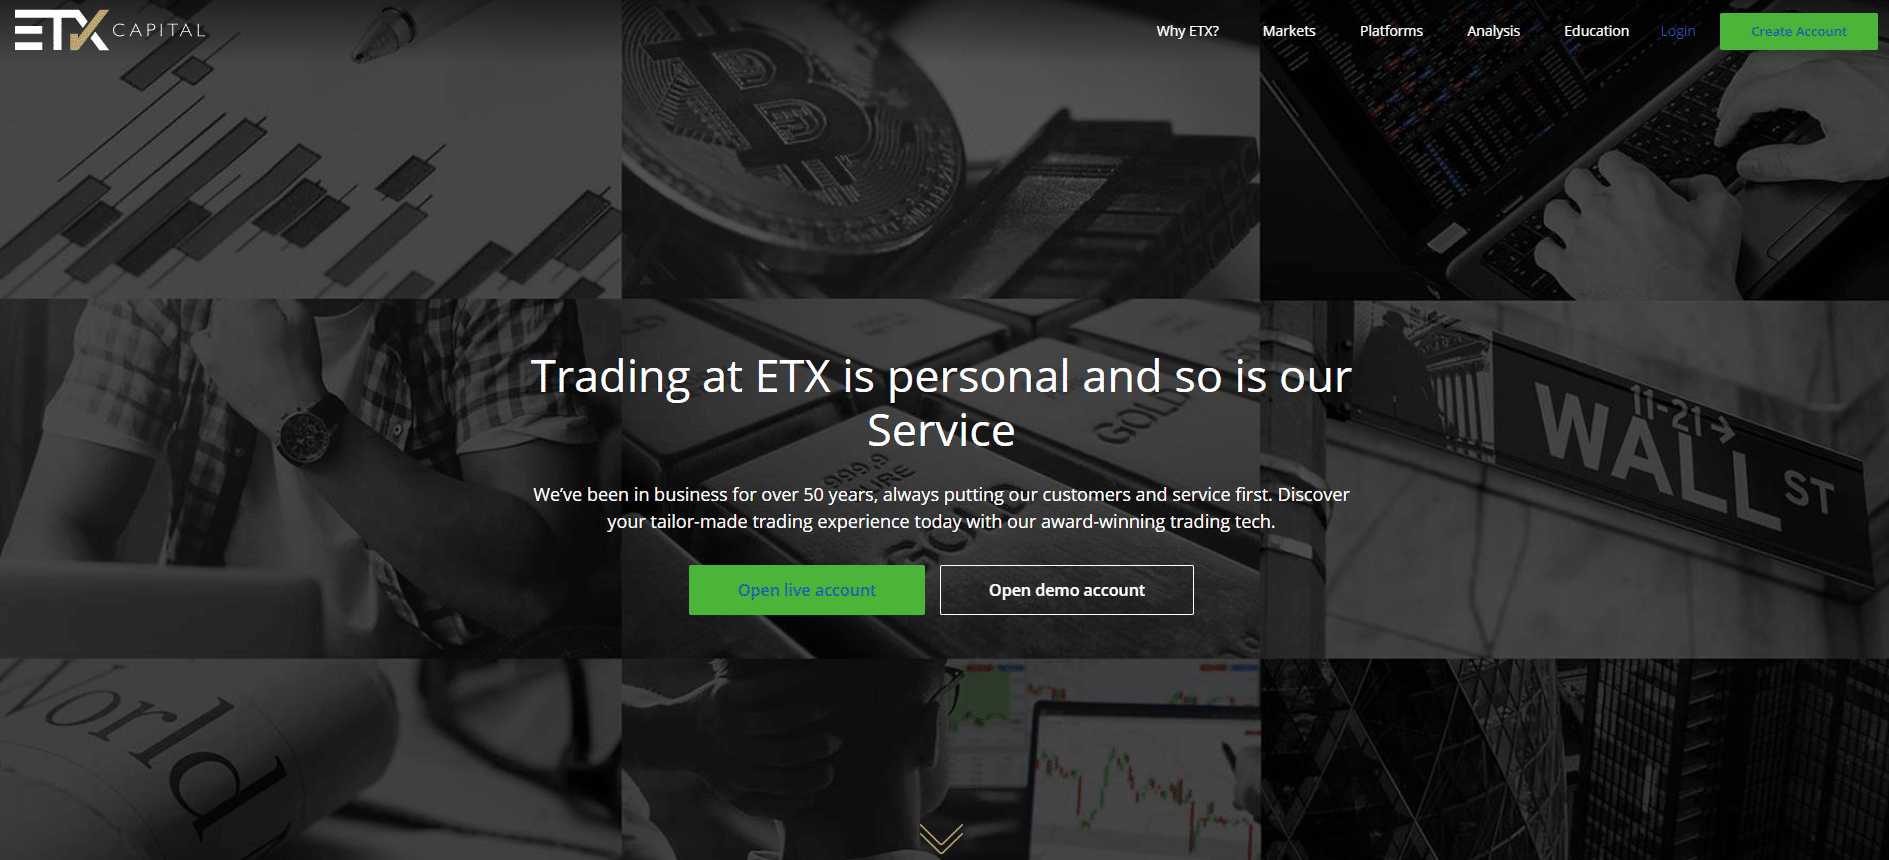 ETX Capital الموقع الرسمي